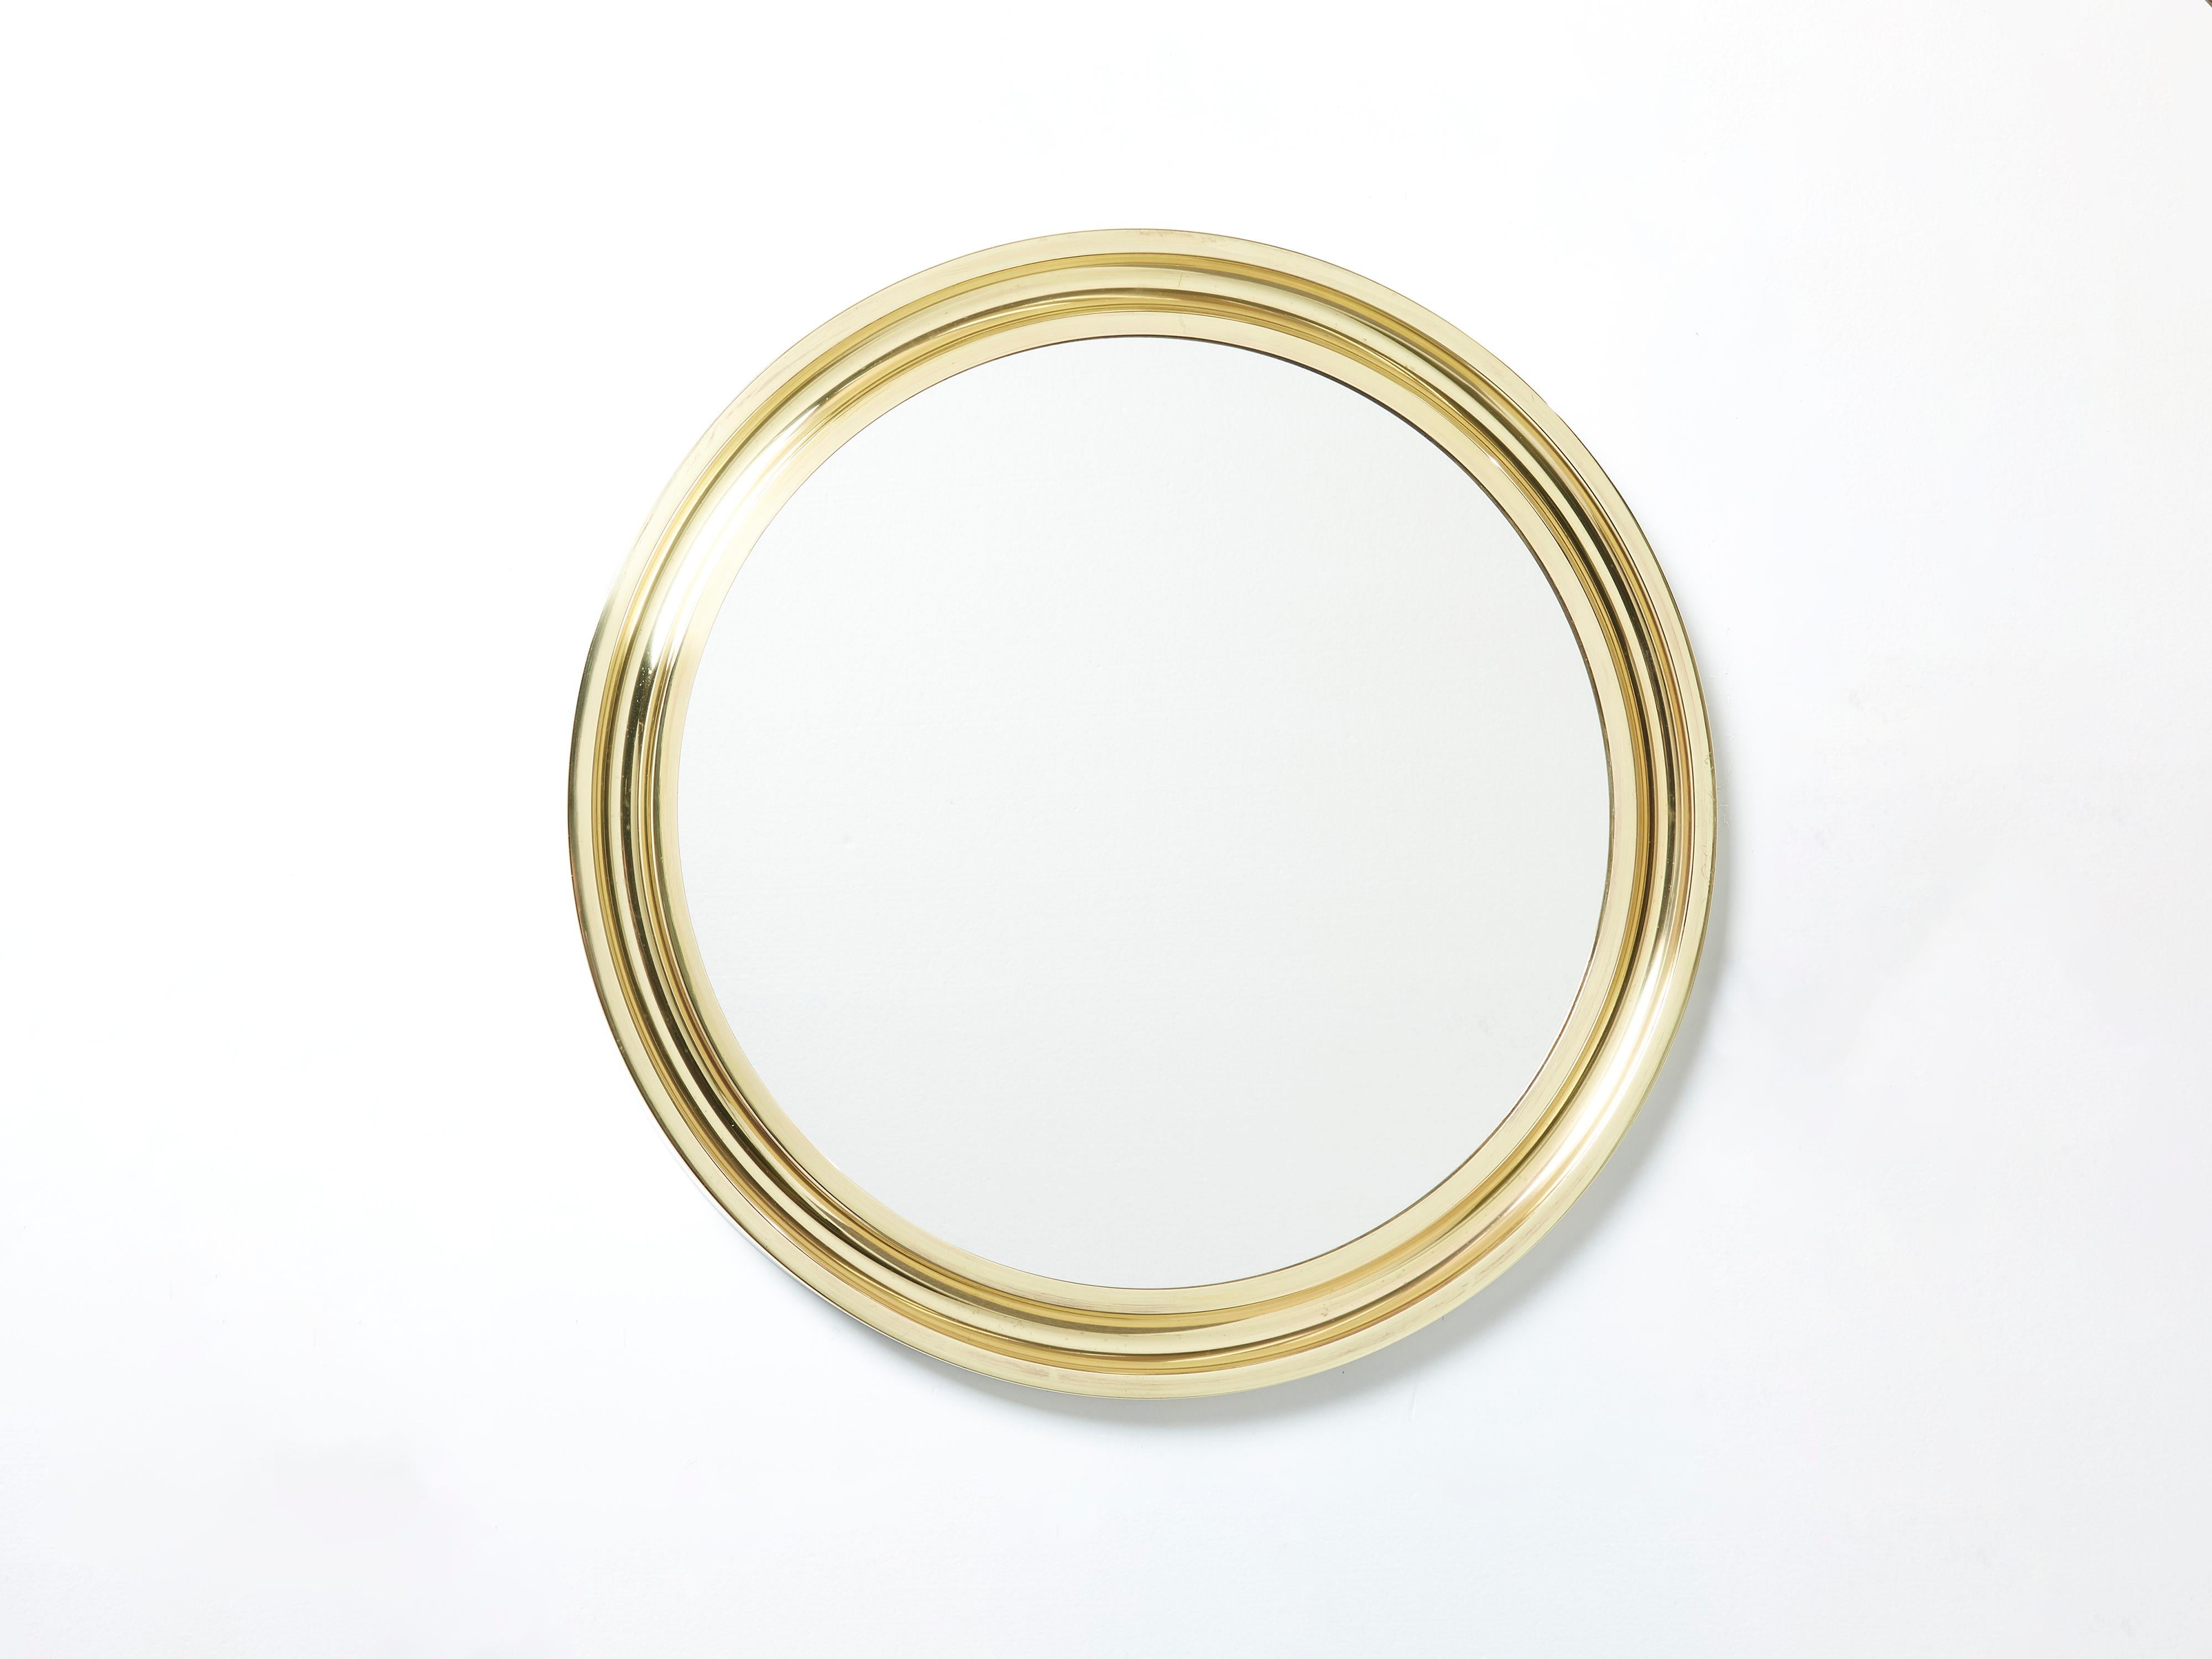 Avec son design géométrique fort, ce miroir rond en laiton Narciso a été conçu par l'italien Sergio Mazza pour Artemide à la fin des années 1960. Un miroir parfait pour une entrée ou une salle d'eau. Trouvé en très bon état vintage et fabriqué avec